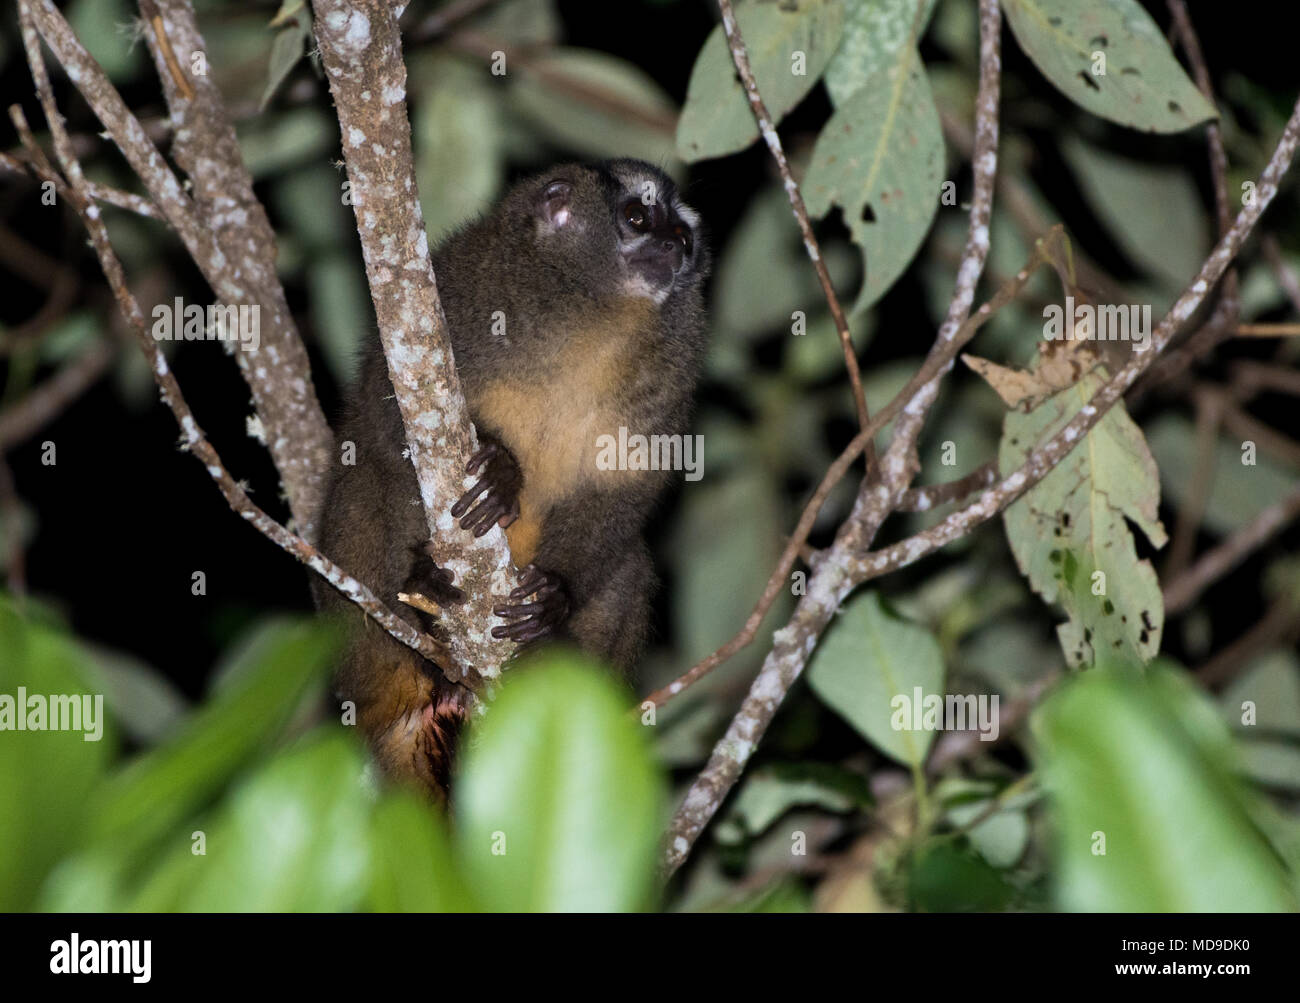 Nuit Monkey (Aotus griseimembra), un primate nocturne, de recherche de nourriture sur un arbre. La Sierra Nevada de Santa Marta, Colombie, Amérique du Sud. Banque D'Images